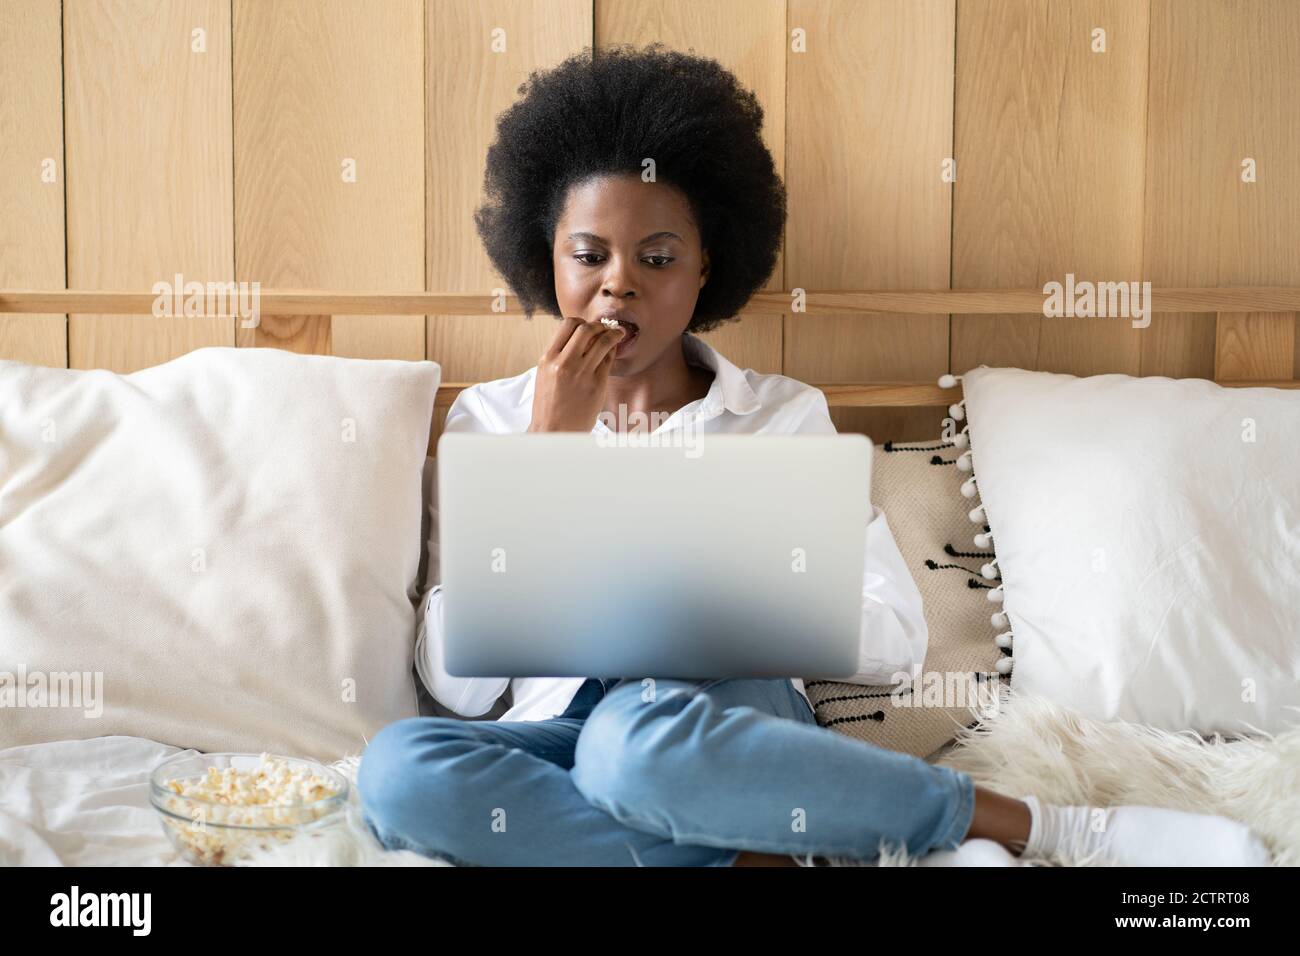 Femme afro-américaine concentrée en chemise blanche se détendant après le travail, mangeant du pop-corn tout en regardant un film d'horreur ou de thriller sur un ordinateur portable, allongé au lit. Paresseux r Banque D'Images